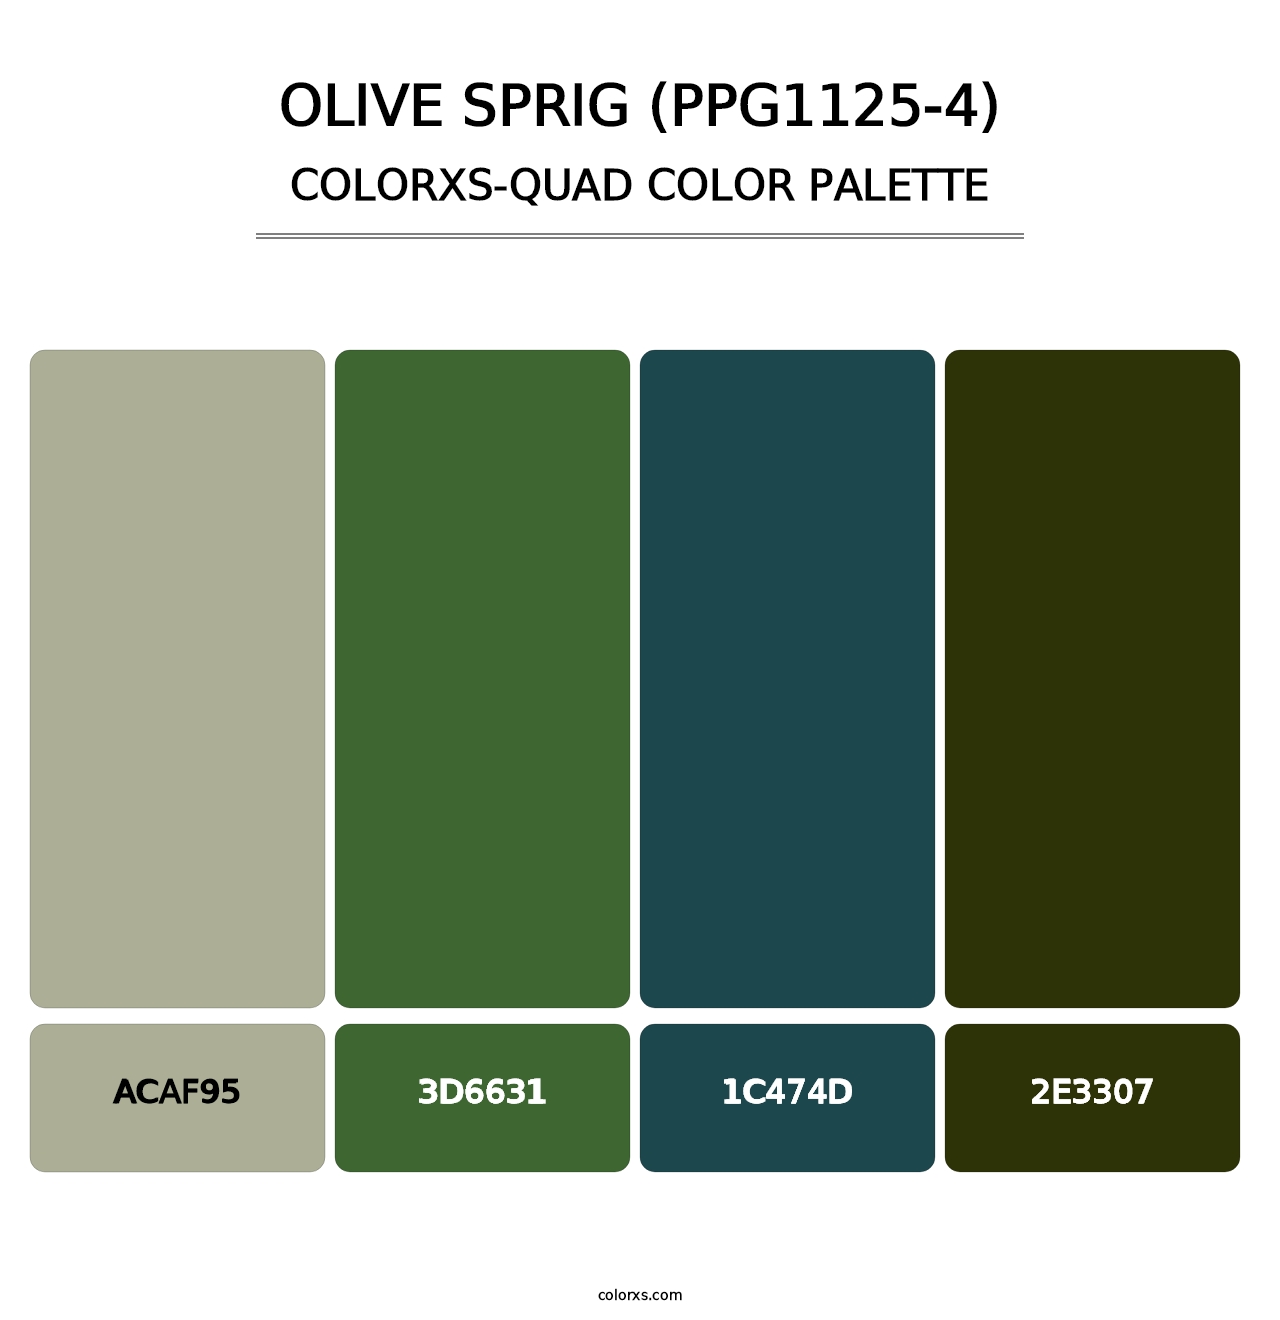 Olive Sprig (PPG1125-4) - Colorxs Quad Palette